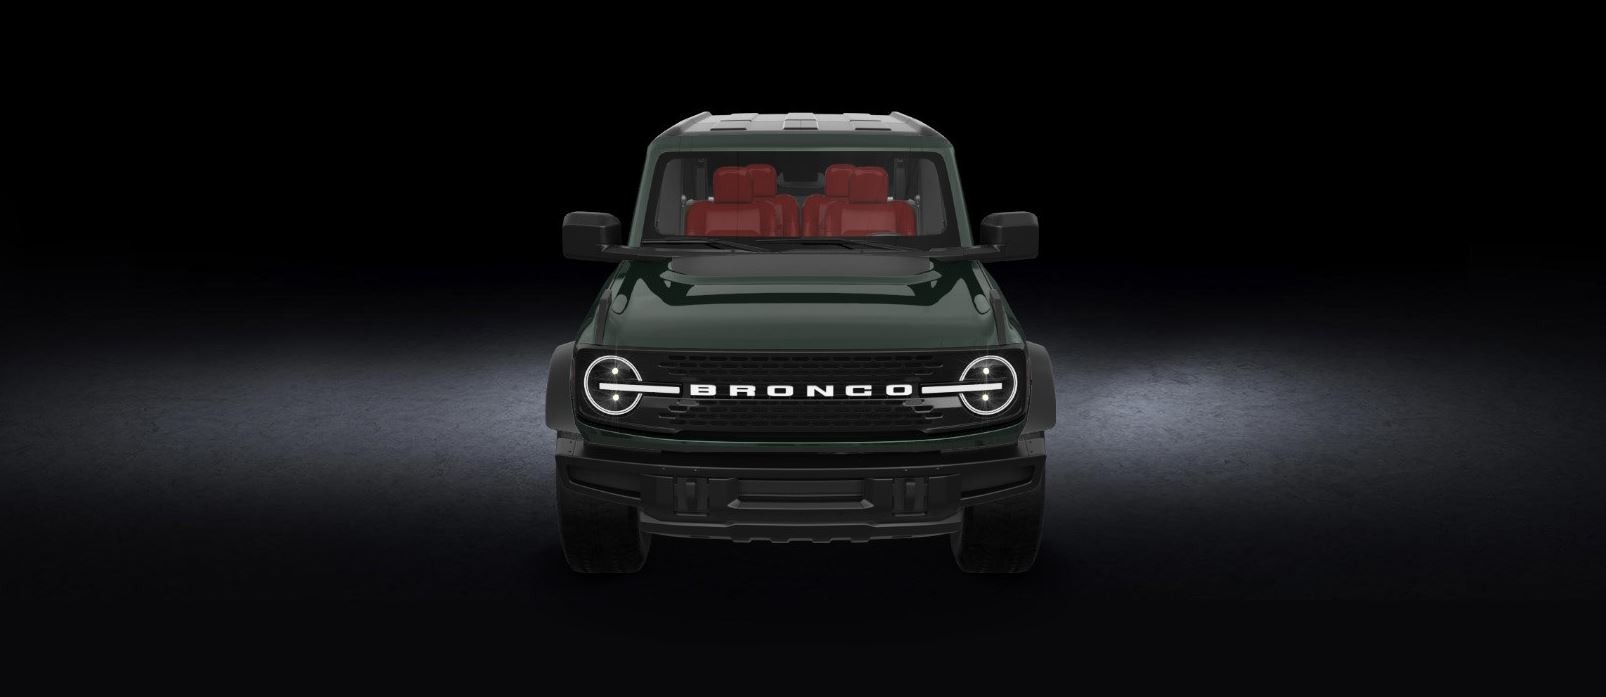 Ford Bronco Bronco Bullitt Rendering (in Dark Highland Green Paint) 2021-ford-bronco-bullitt-digitally-envisioned-with-dark-highland-green-paint_1